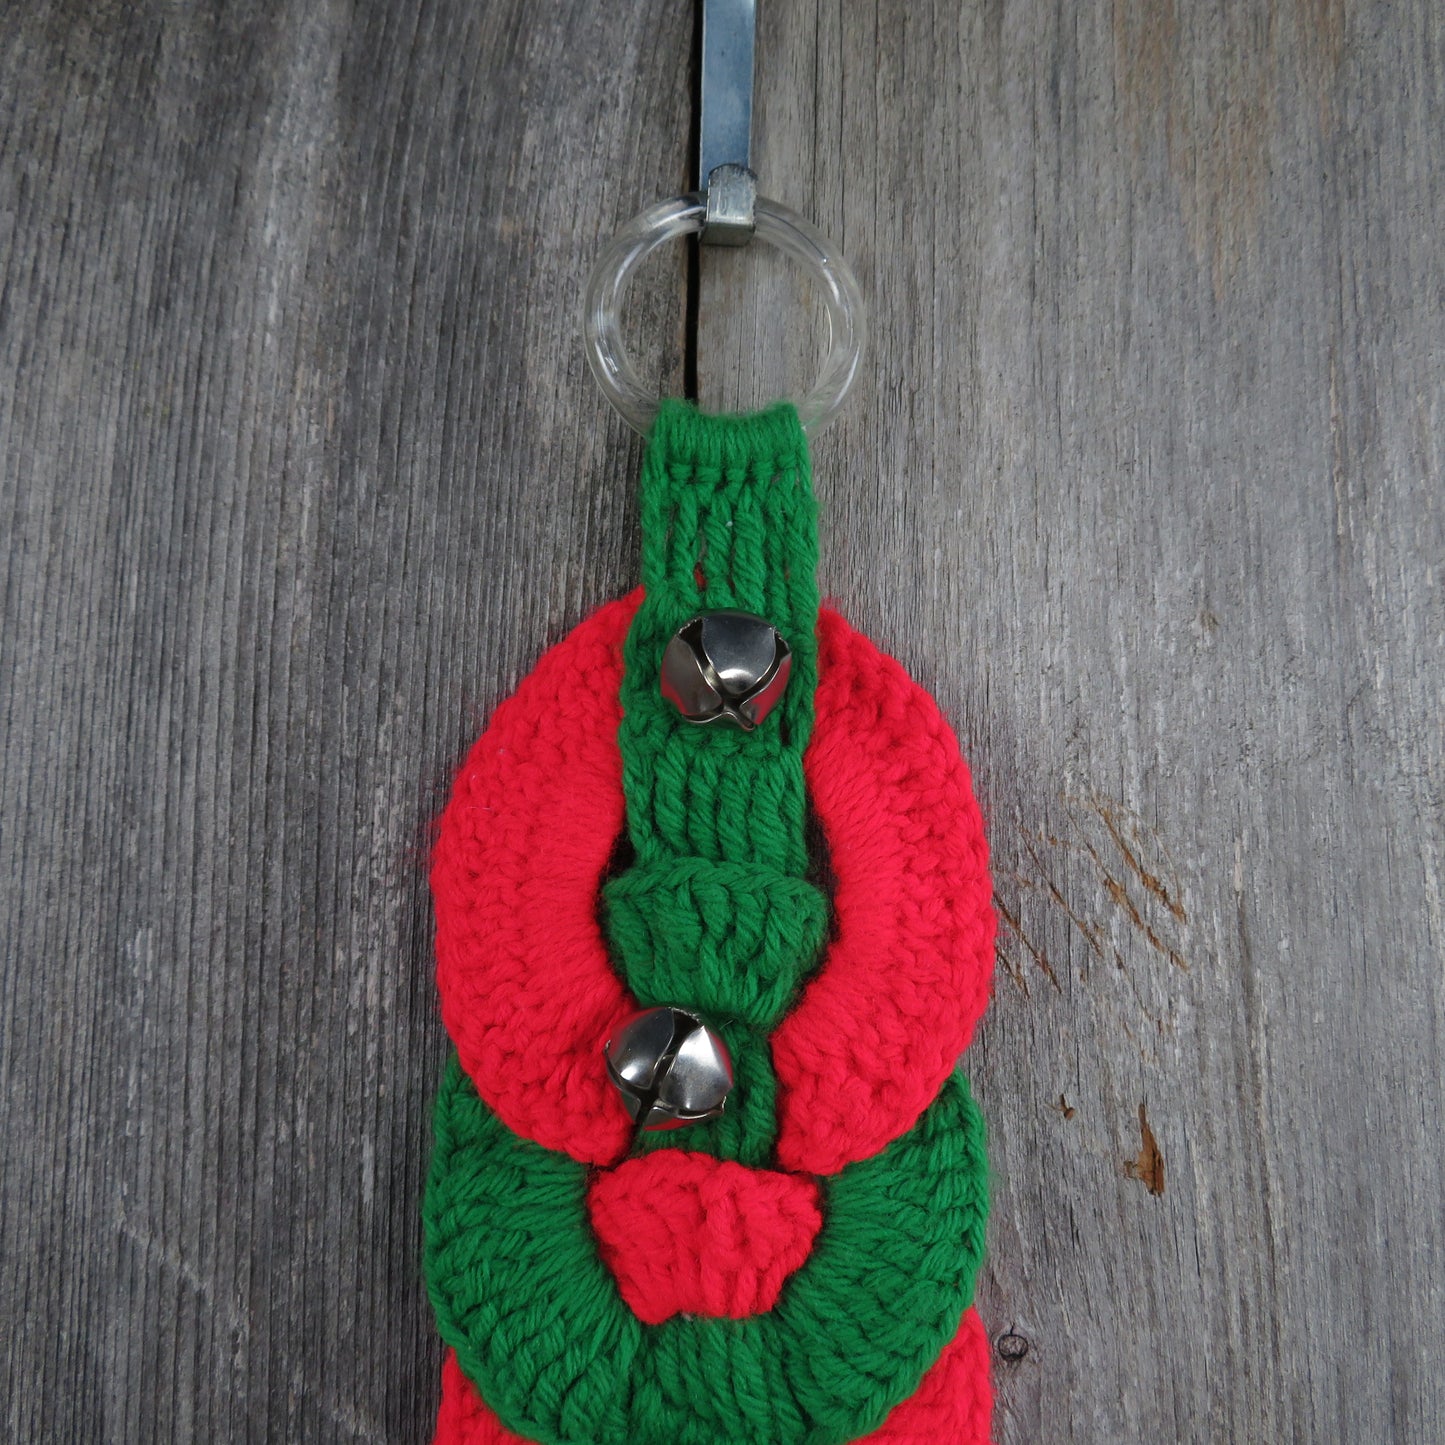 Vintage Crochet Christmas Door Hanger Wreath Bell Handmade Red Green White Rings Knit - At Grandma's Table